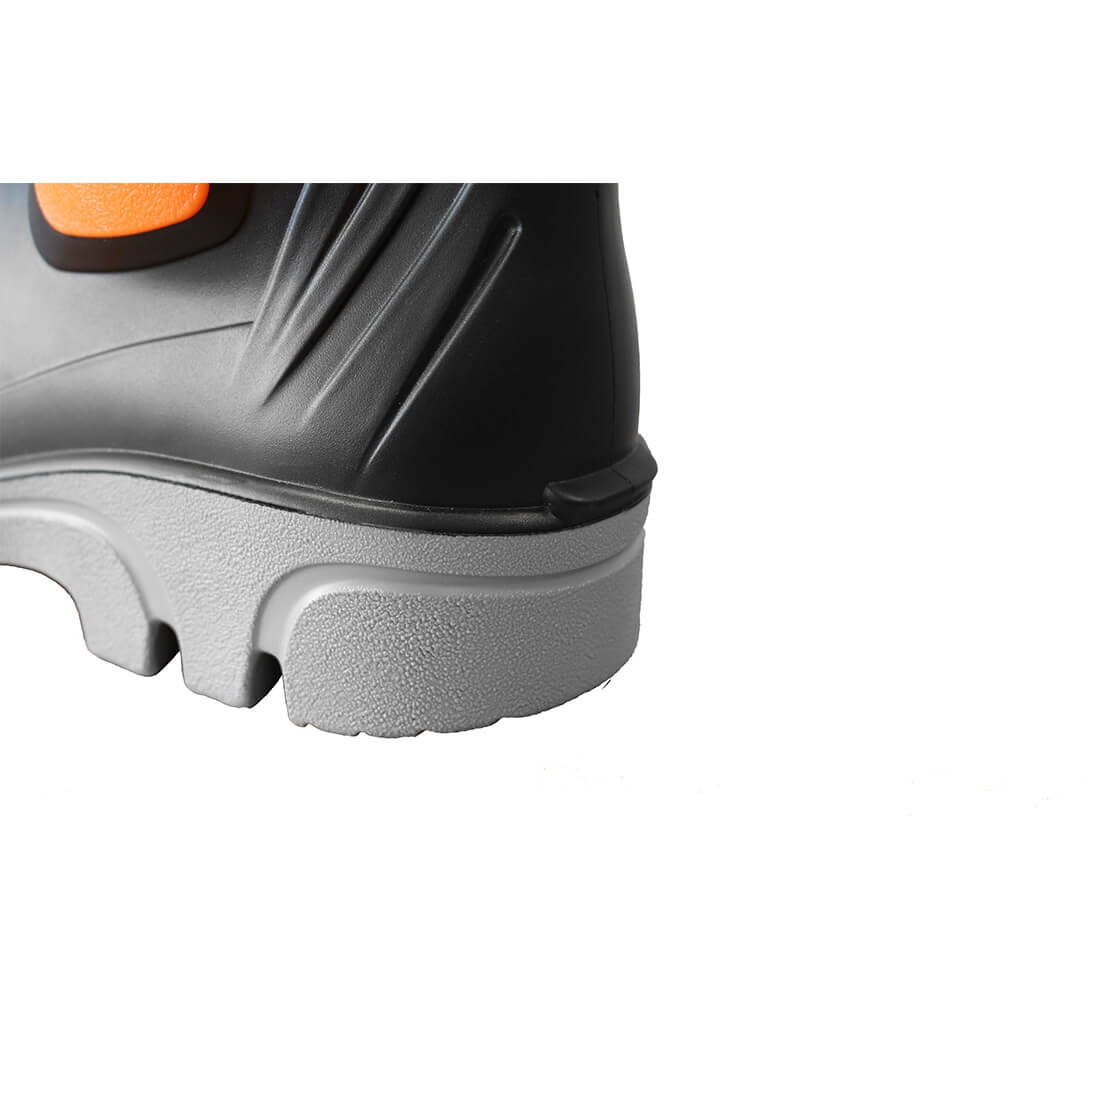 Botte de Sécurité PORTWEST avec protection des métatarses S5 M - Les chaussures de protection